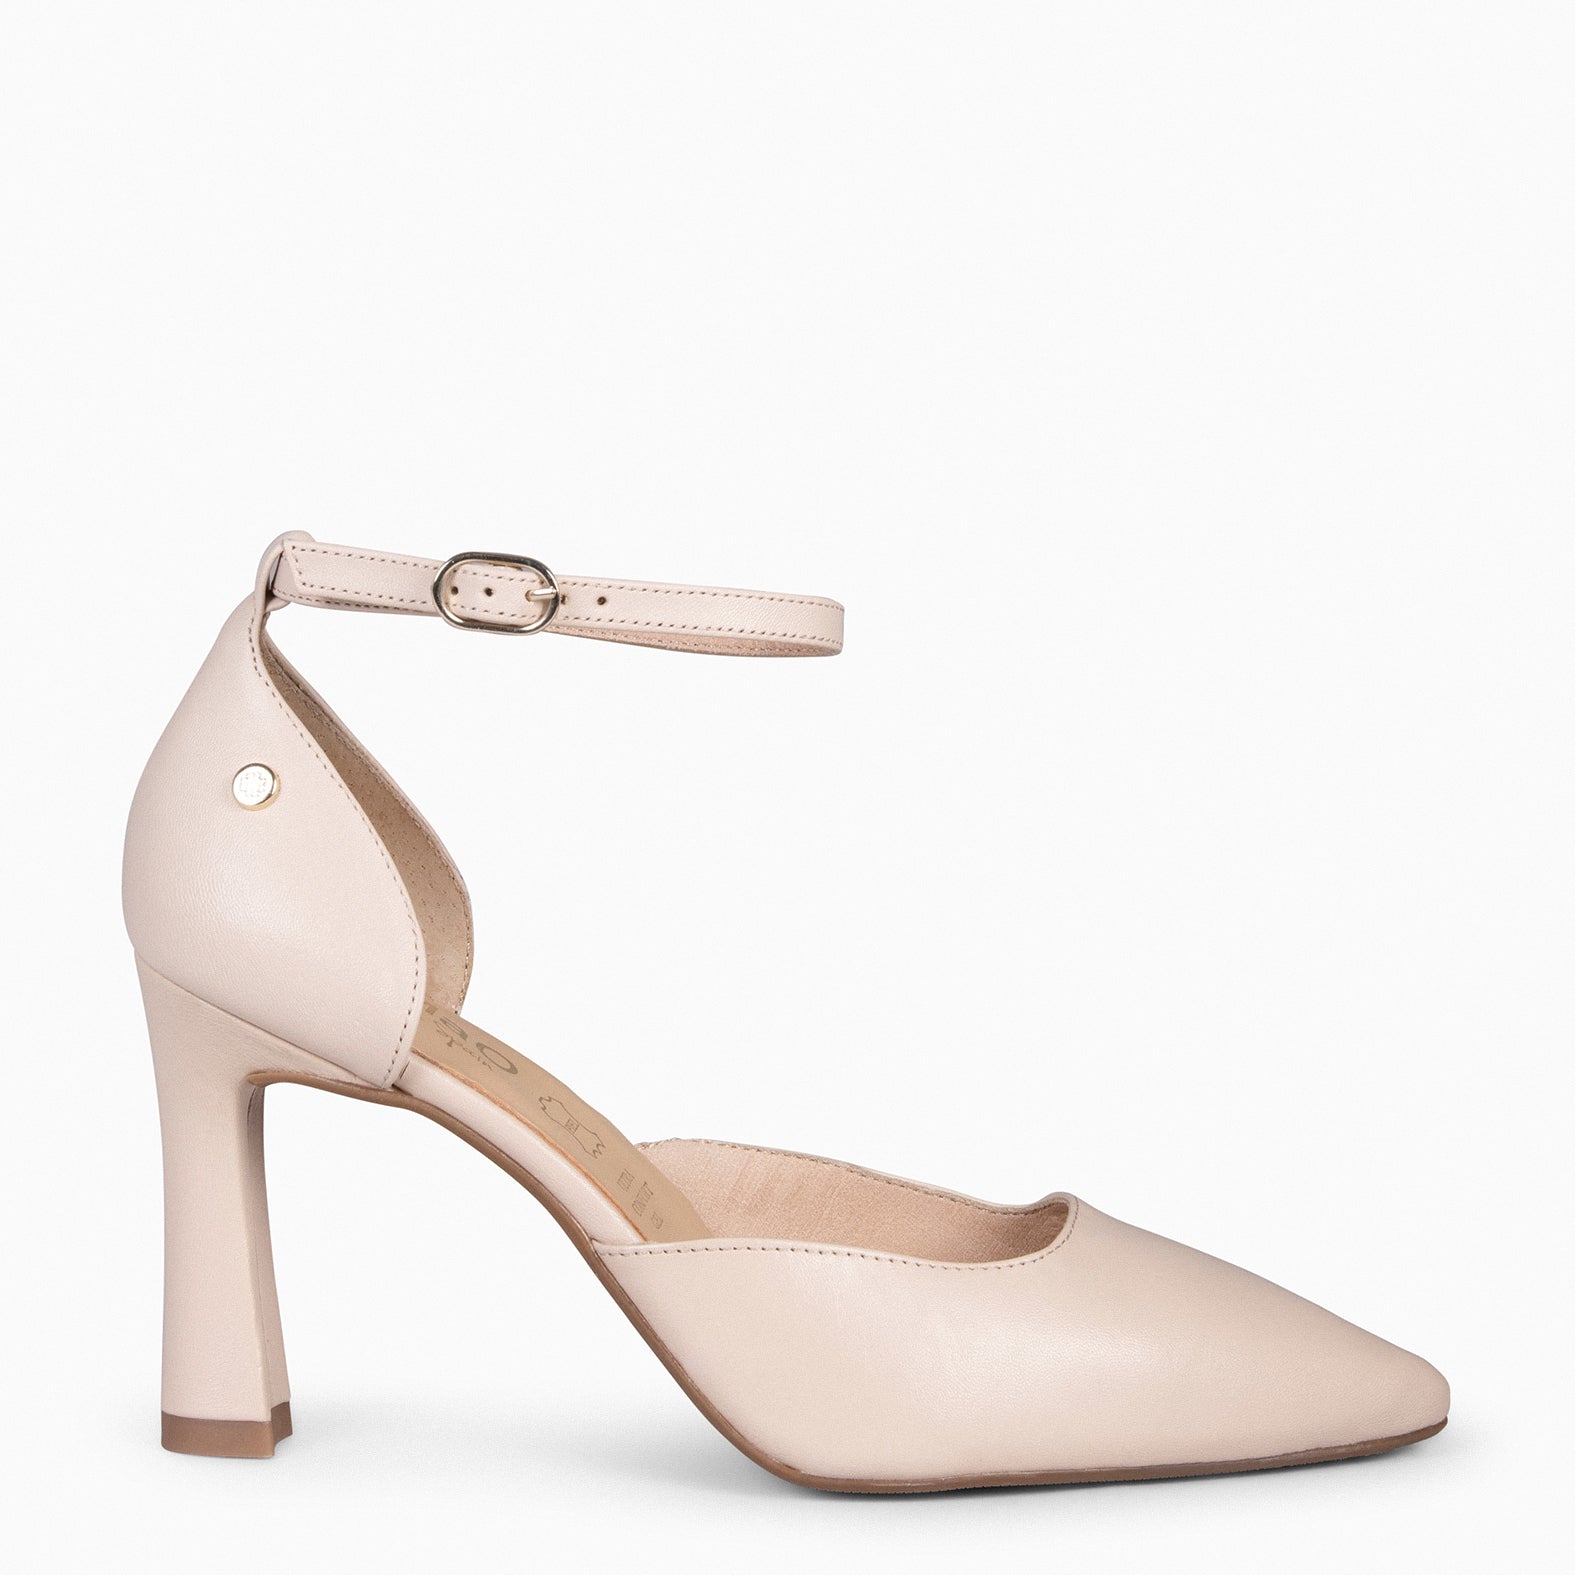 AINHOA – NUDE elegant heels